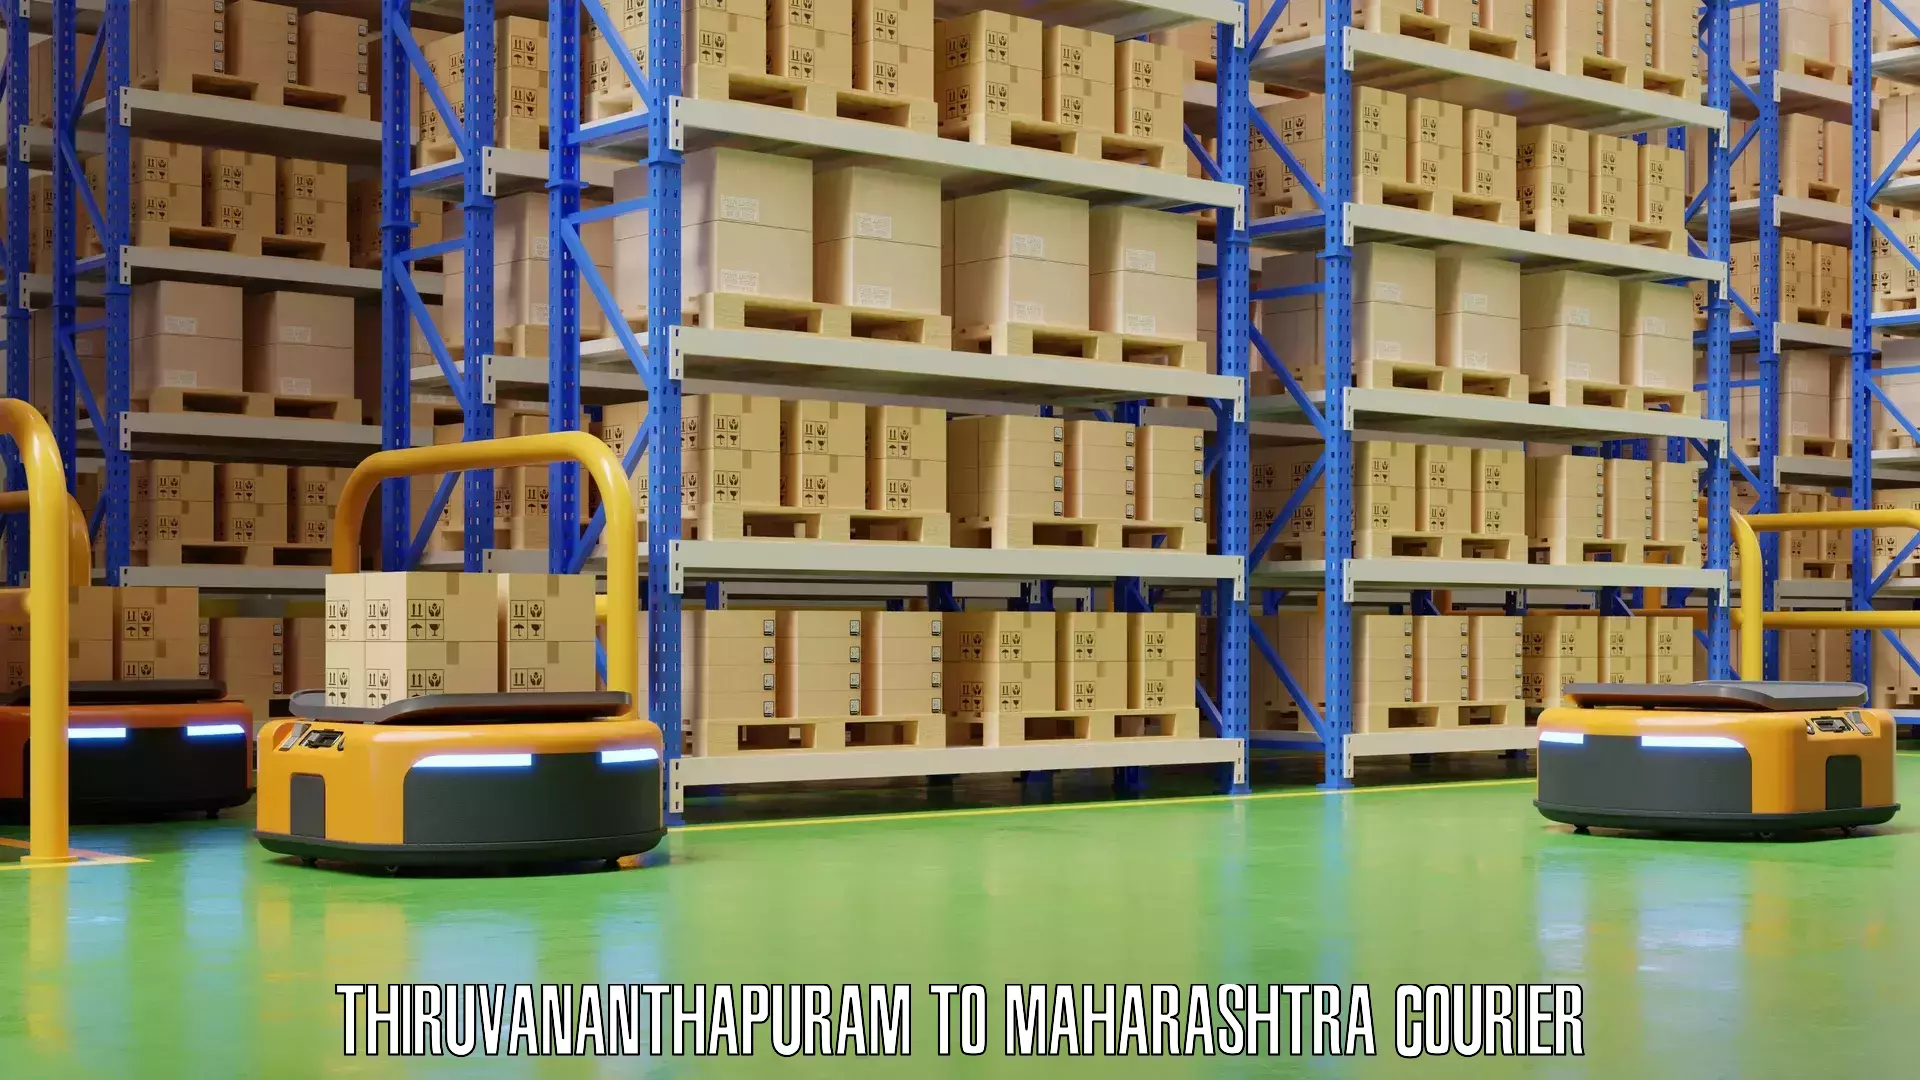 Personal effects shipping Thiruvananthapuram to Maharashtra